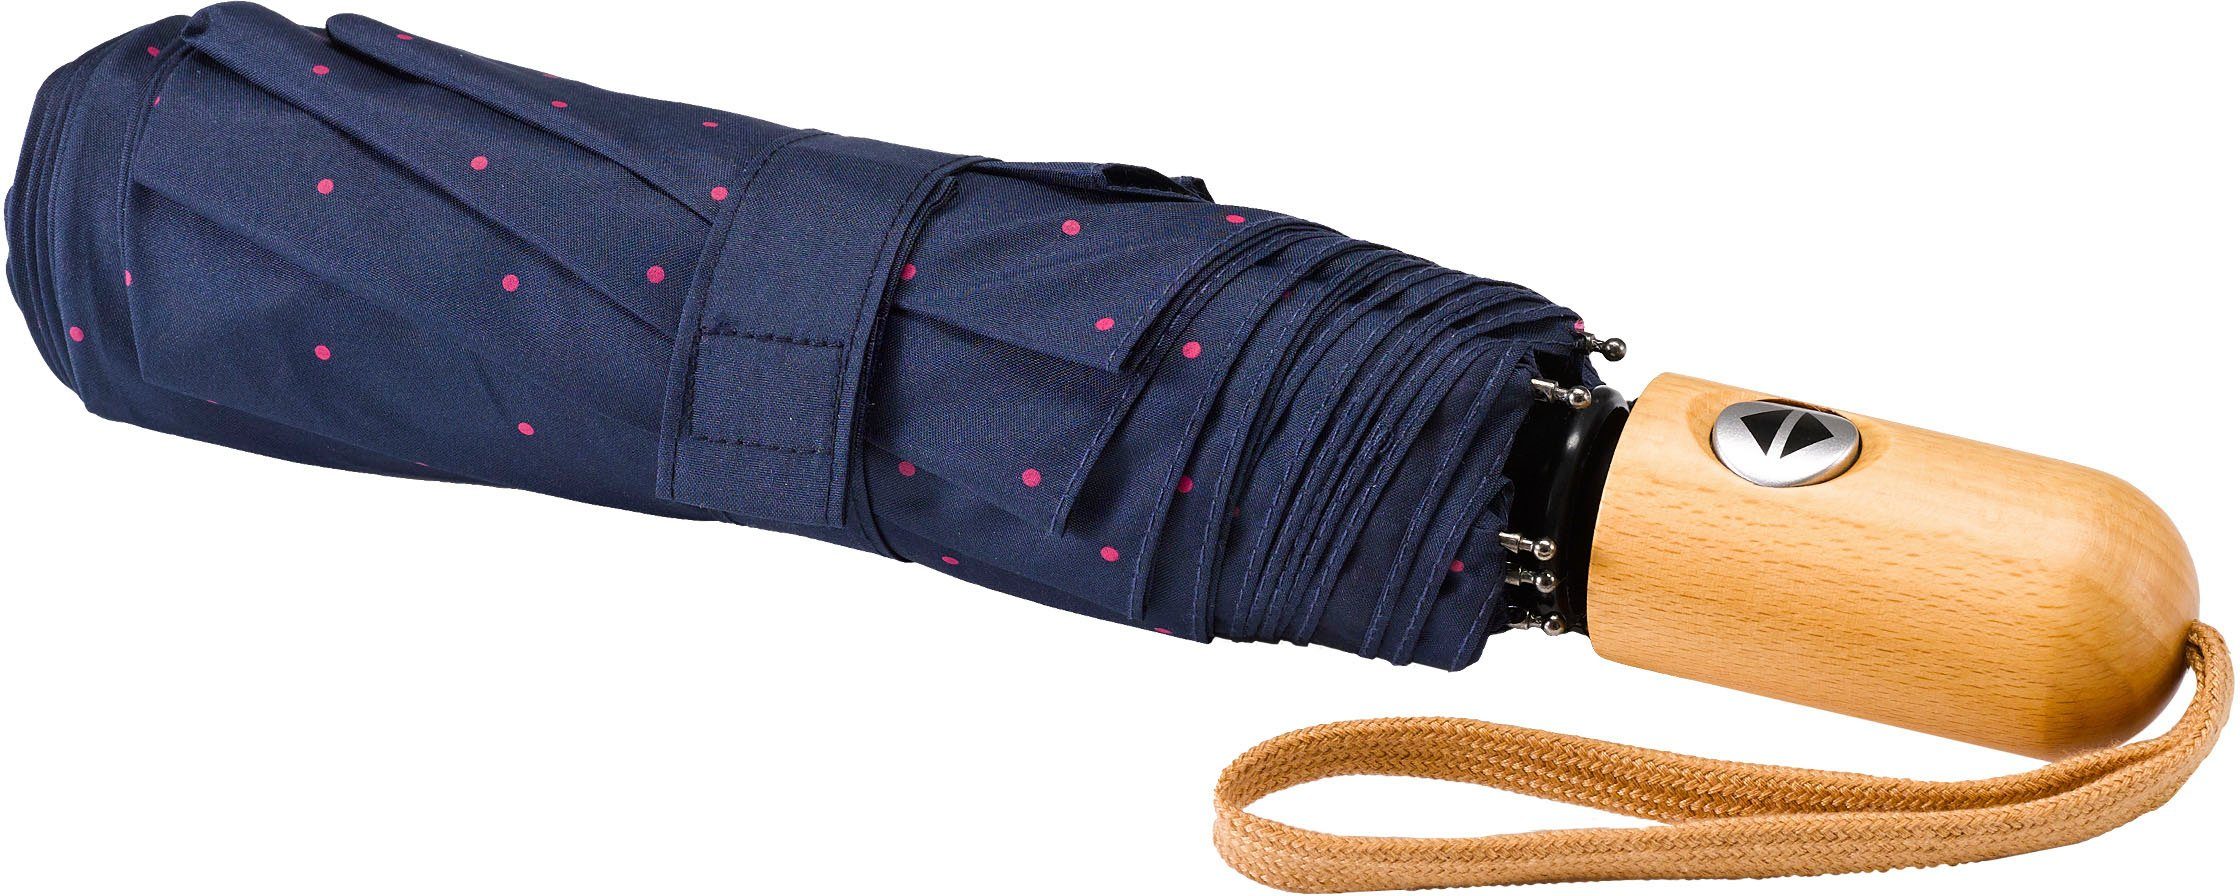 marine, Umwelt-Taschenschirm, pink EuroSCHIRM® Punkte Taschenregenschirm